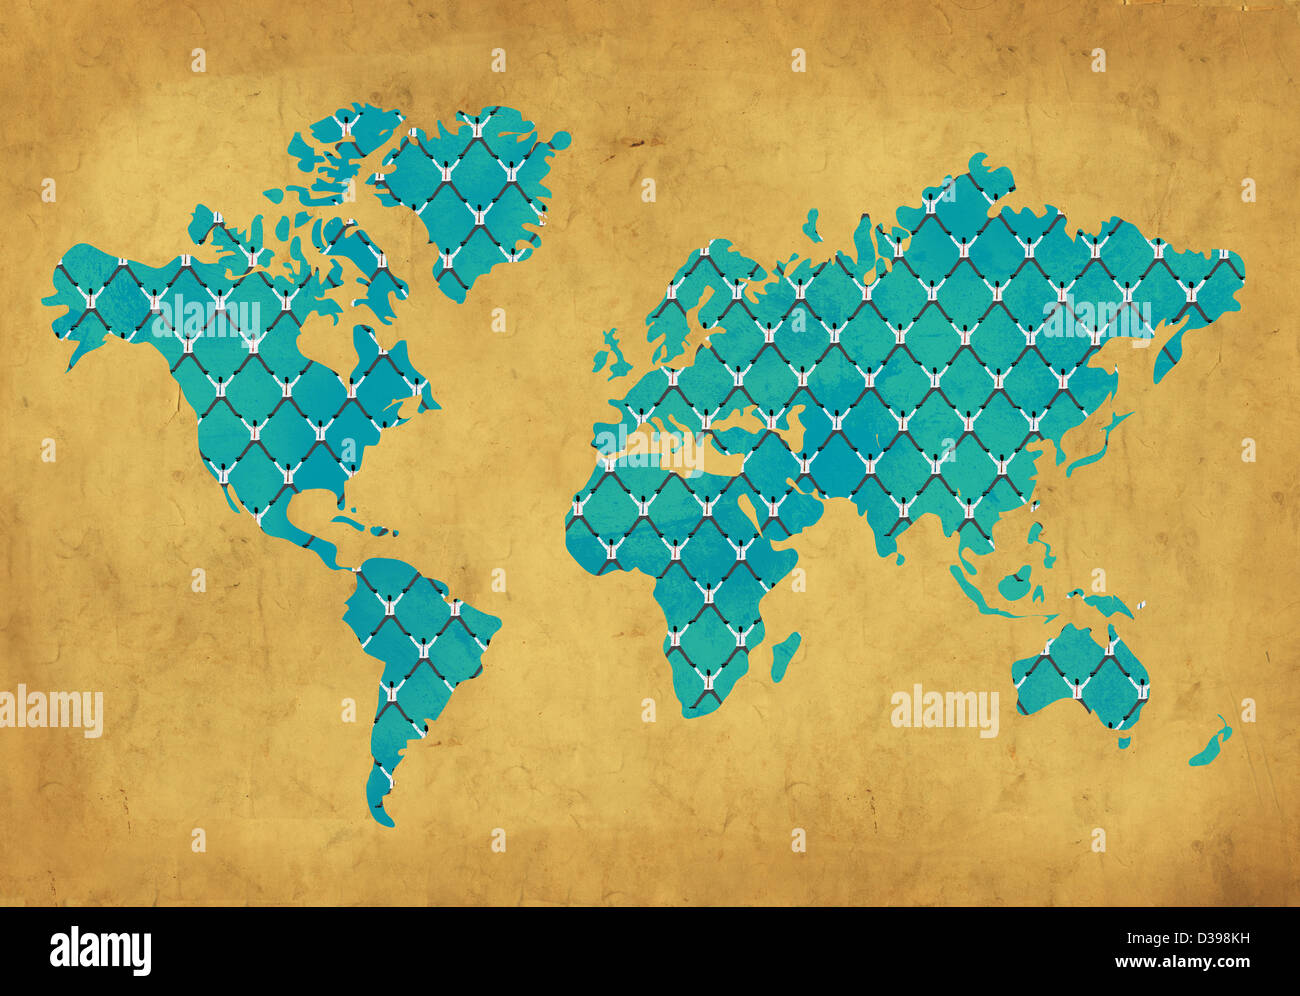 Immagine illustrativa della griglia sulla mappa del mondo che raffigura il concetto di global business networking Foto Stock